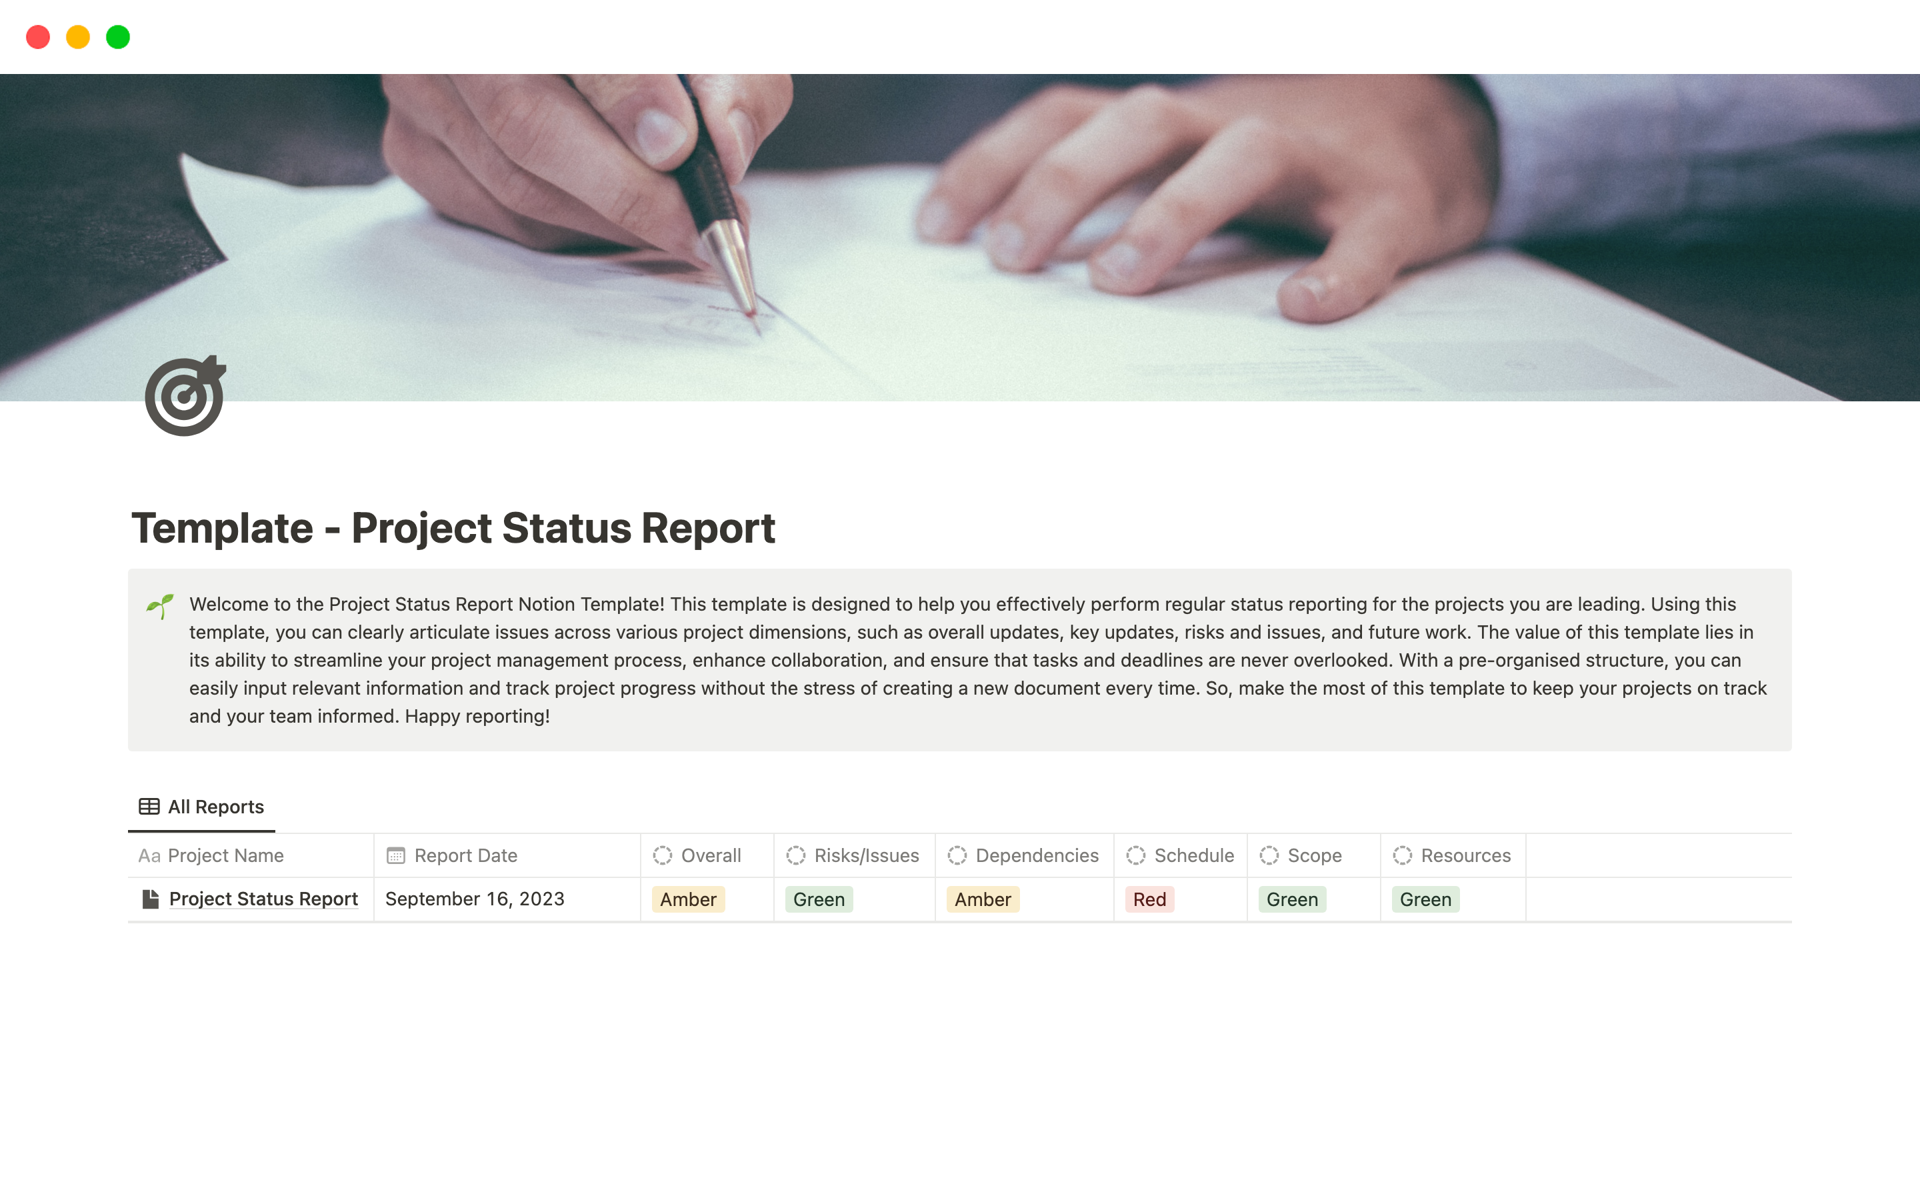 En förhandsgranskning av mallen för Project Status Report